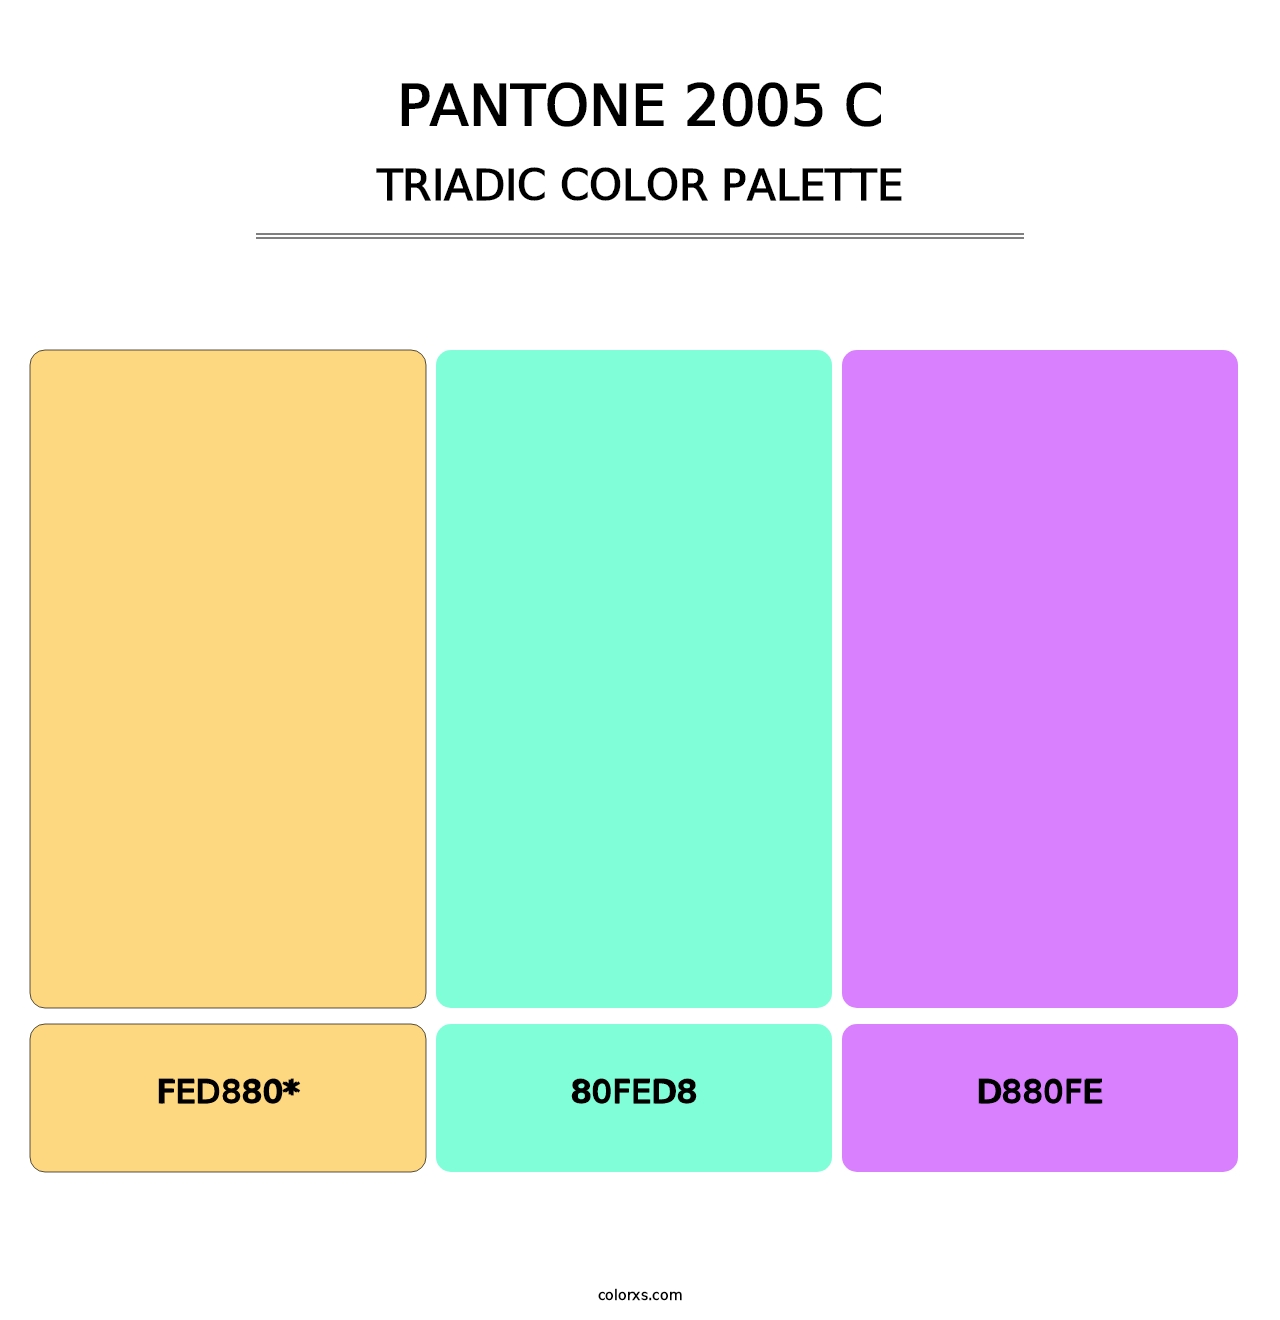 PANTONE 2005 C - Triadic Color Palette